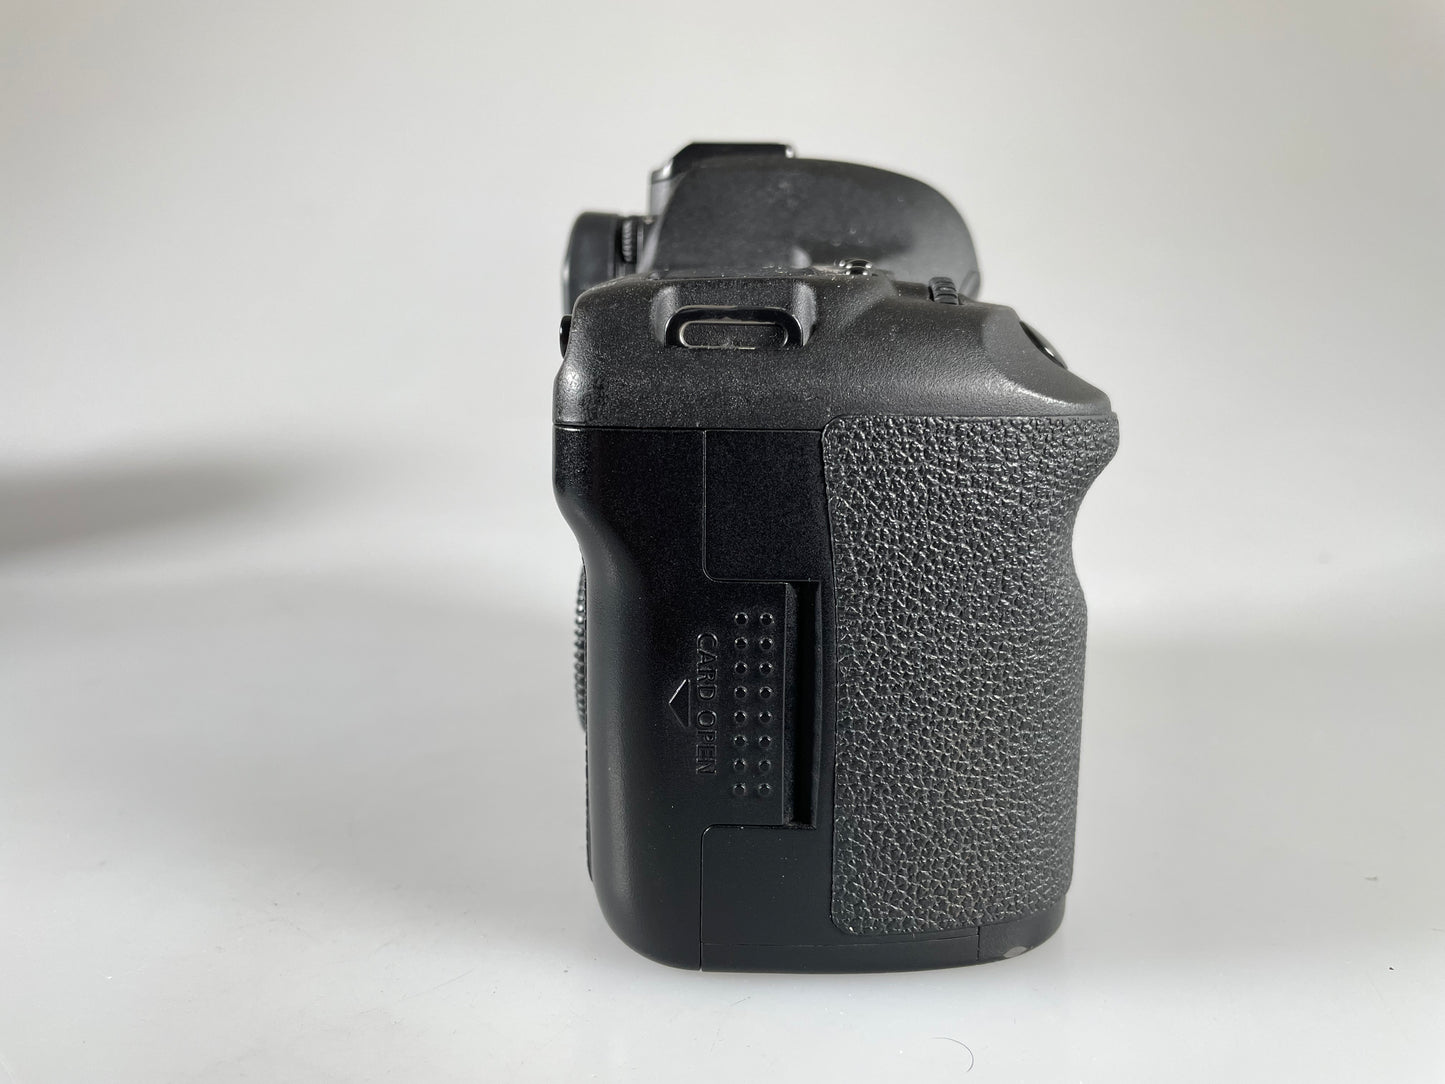 Canon EOS 5D Mark II 21.1MP Full Frame Digital SLR Camera Black Body (SC 69k)